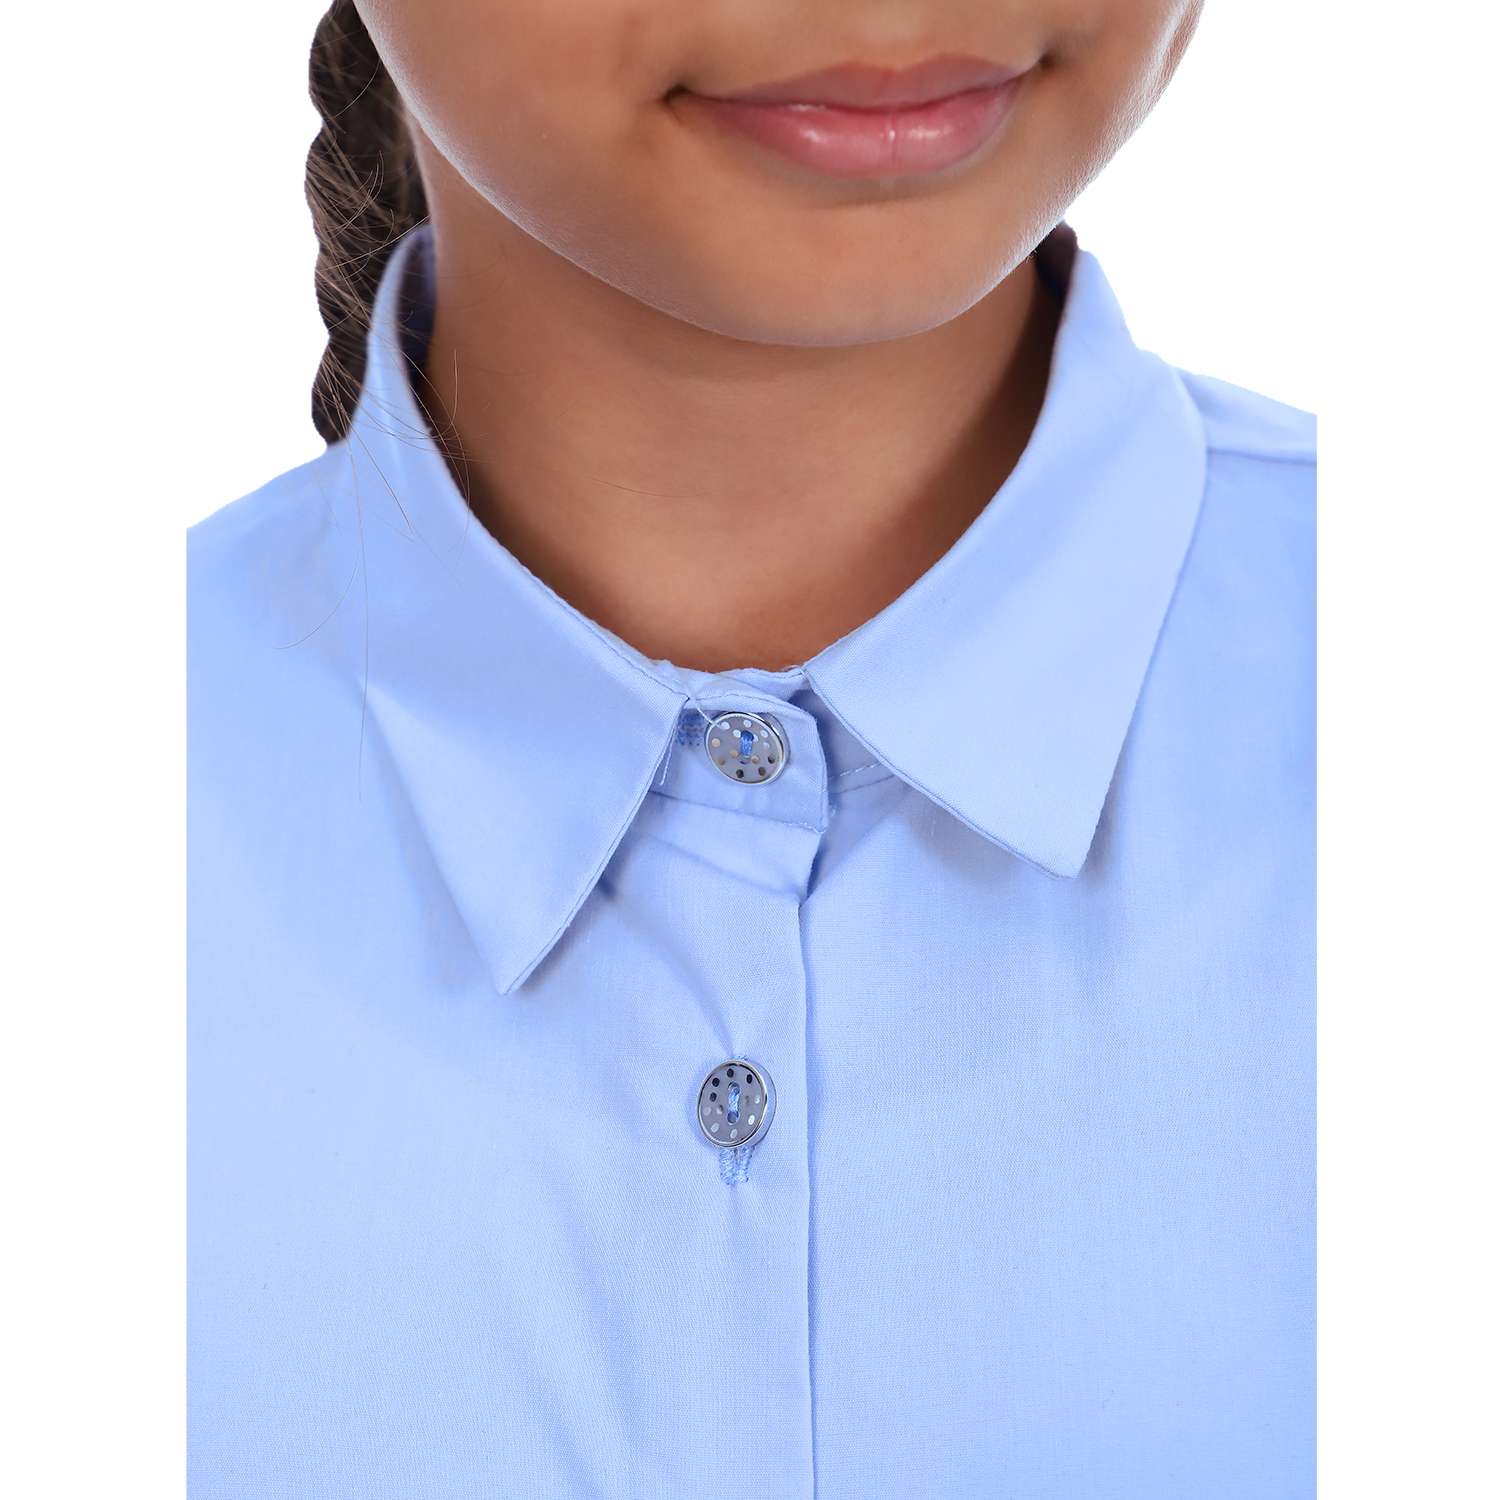 Блузка Детская Одежда BL-11000/голубой - фото 7